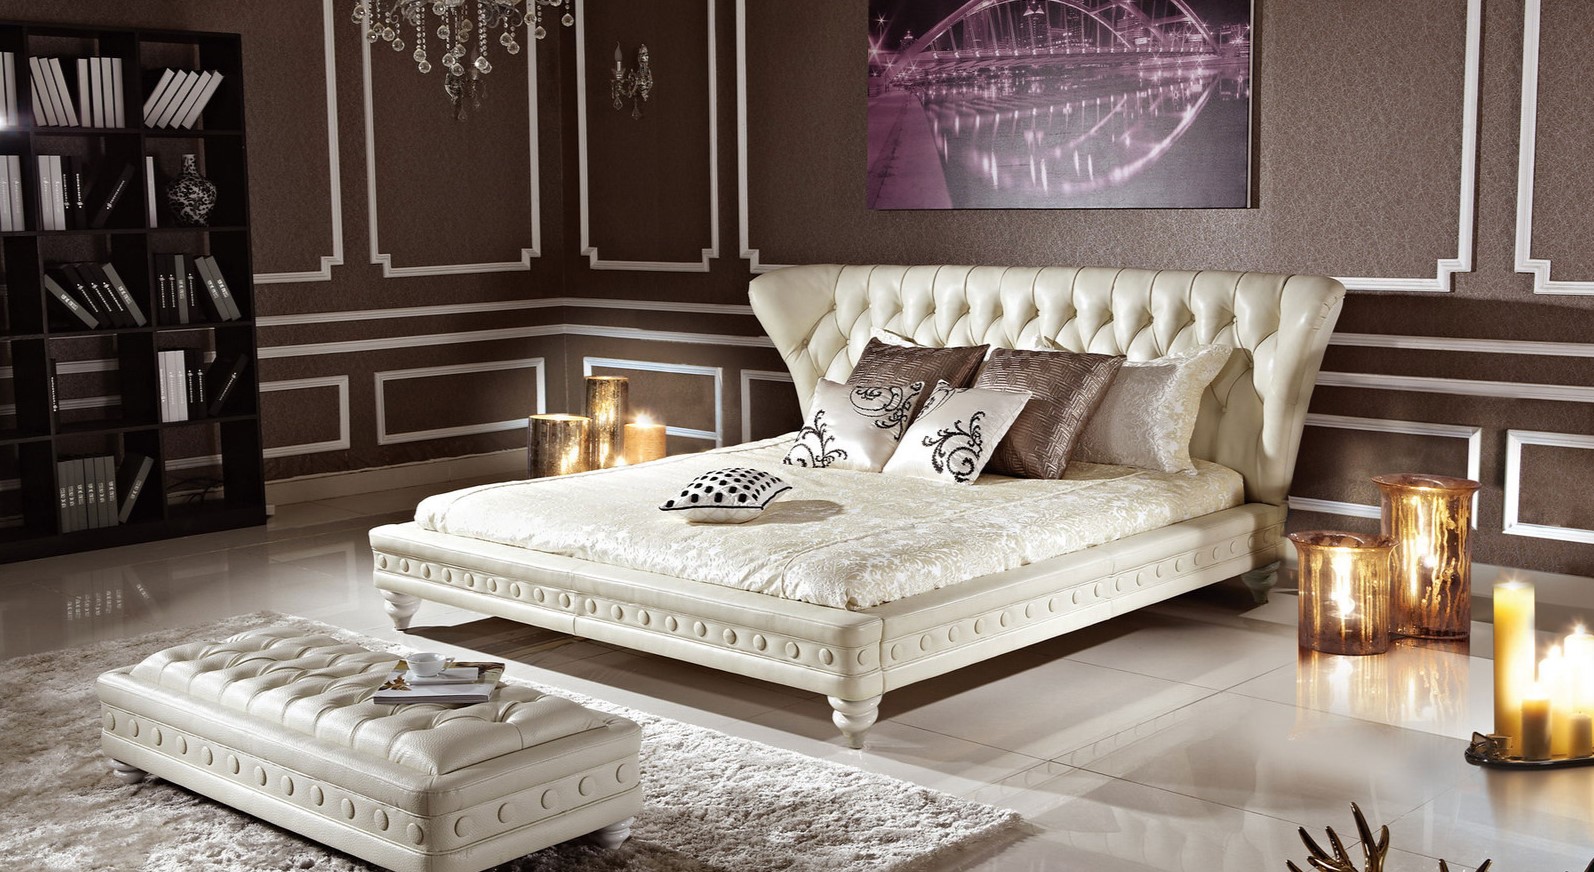 Декоративные подушки с орнаментом прекрасно подходят под стиль интерьера